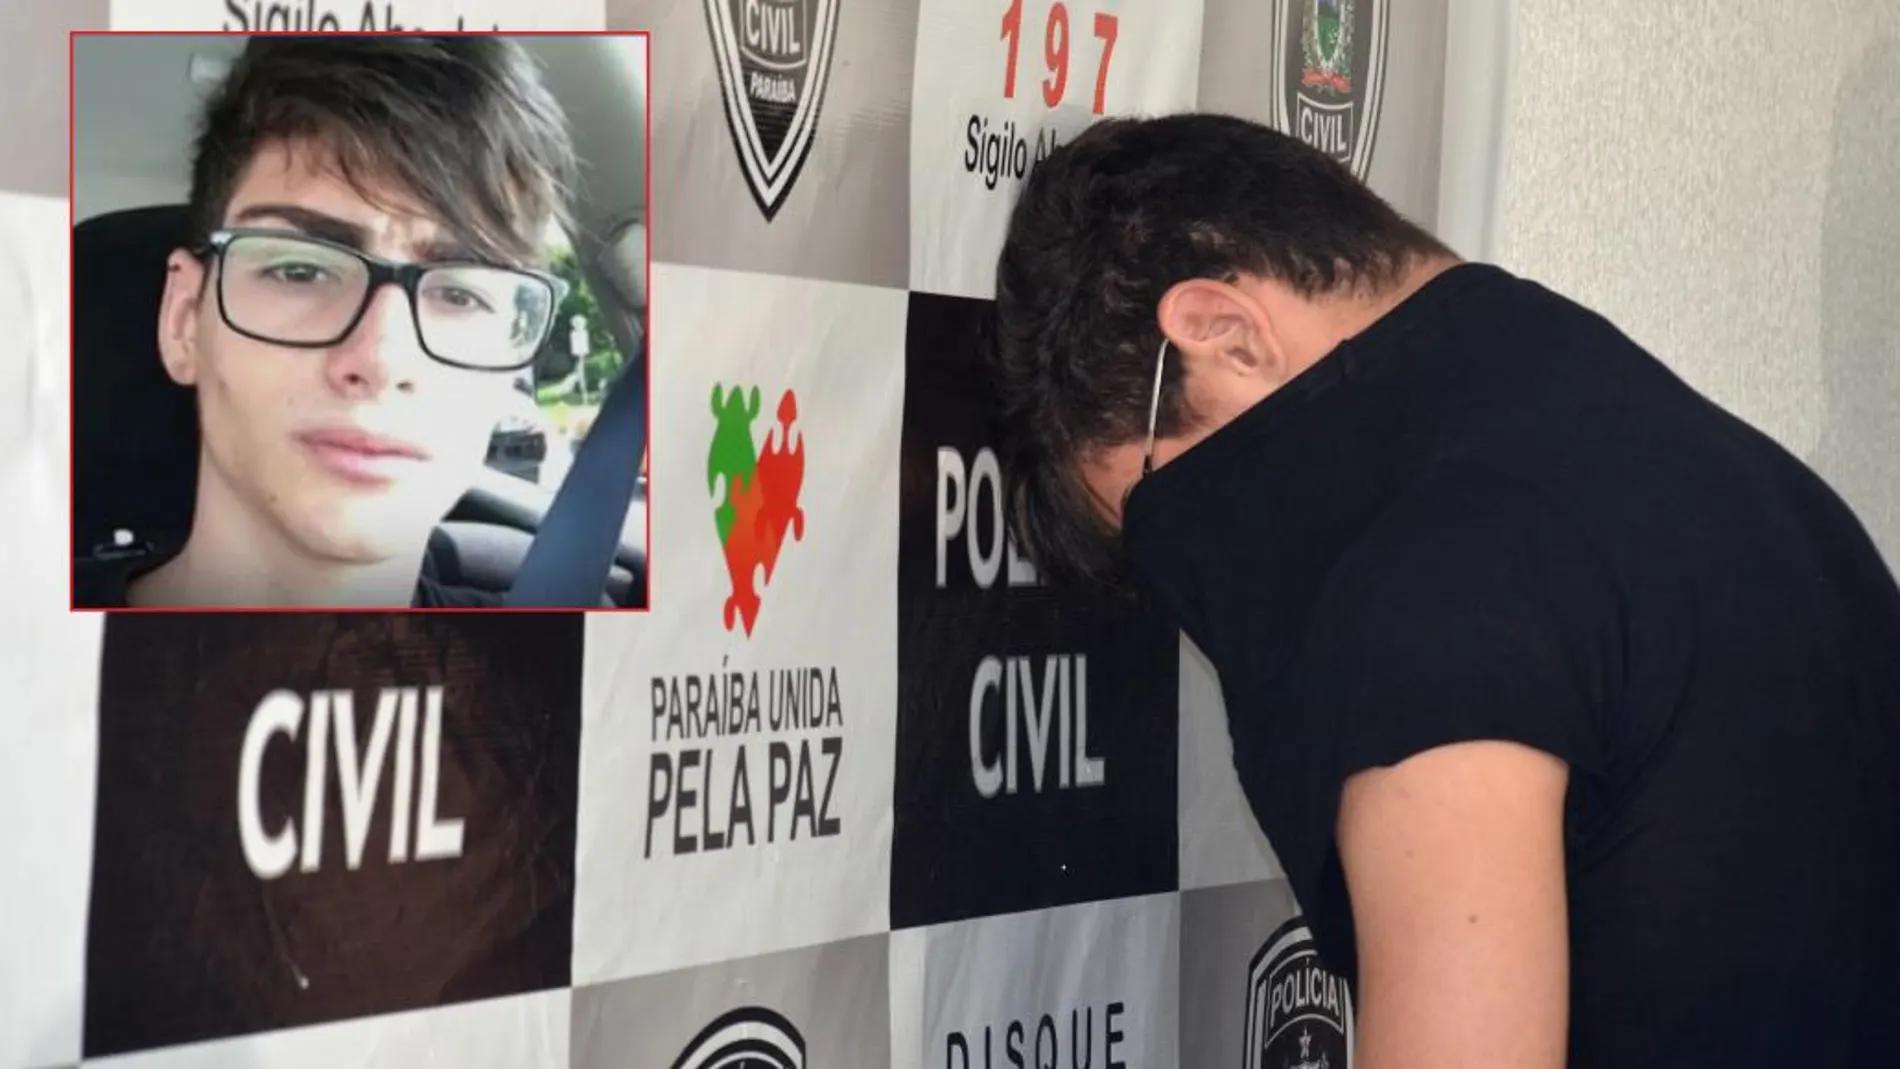 Marvin Henriques Correia, sospechoso de haber colaborado con Patrick Nogueira Gouveia en el asesinato Pioz, en la rueda de prensa de su detención. En la imagen pequeña, una foto suya.